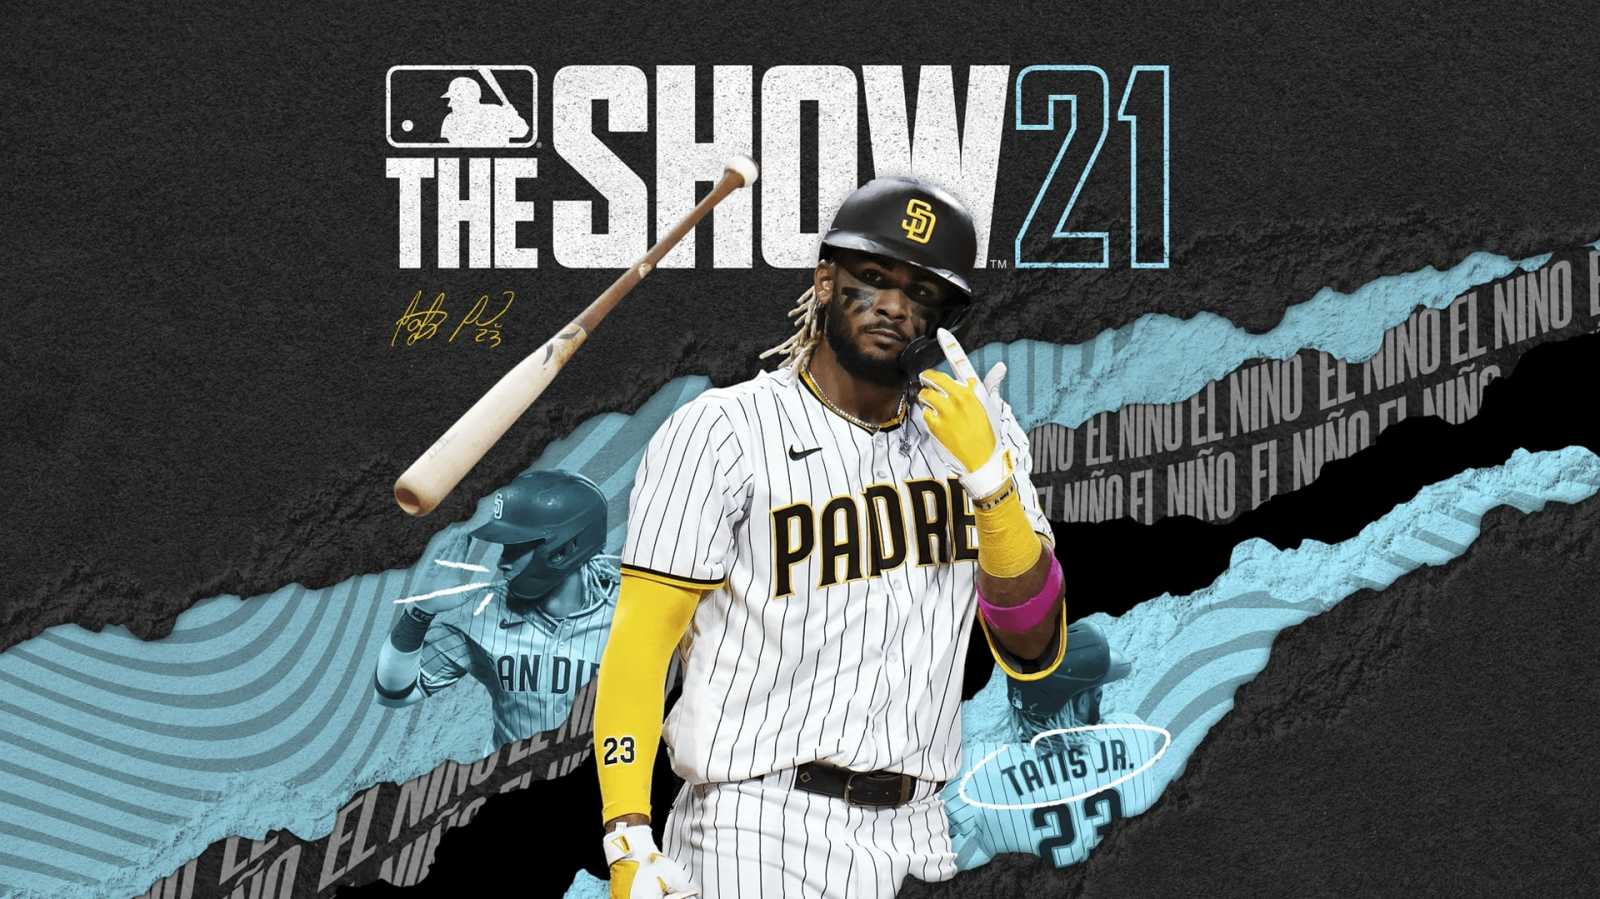 MLB The Show 21 je v Game Passu díky rozhodnutí MLB. Organizace se chce dostat k více hráčům, potvrdil PlayStation